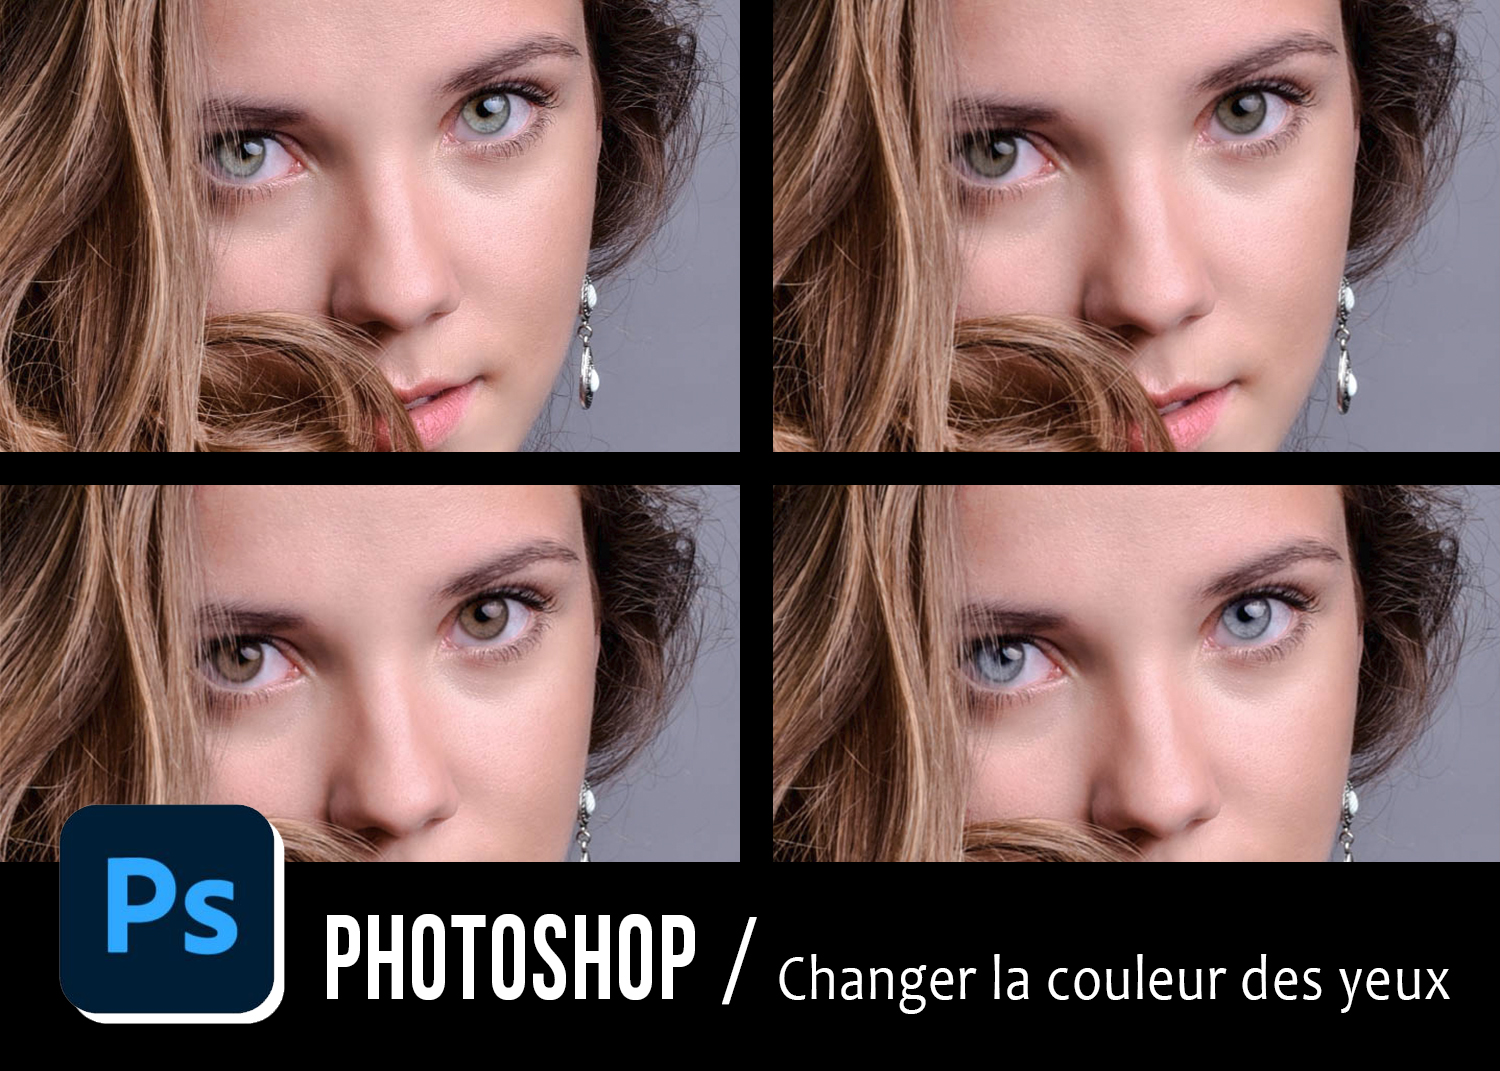 Changer De Couleur Photoshop : Changer La Couleur Des Yeux En 7 Etapes Photoshop Tutoriel Retouche